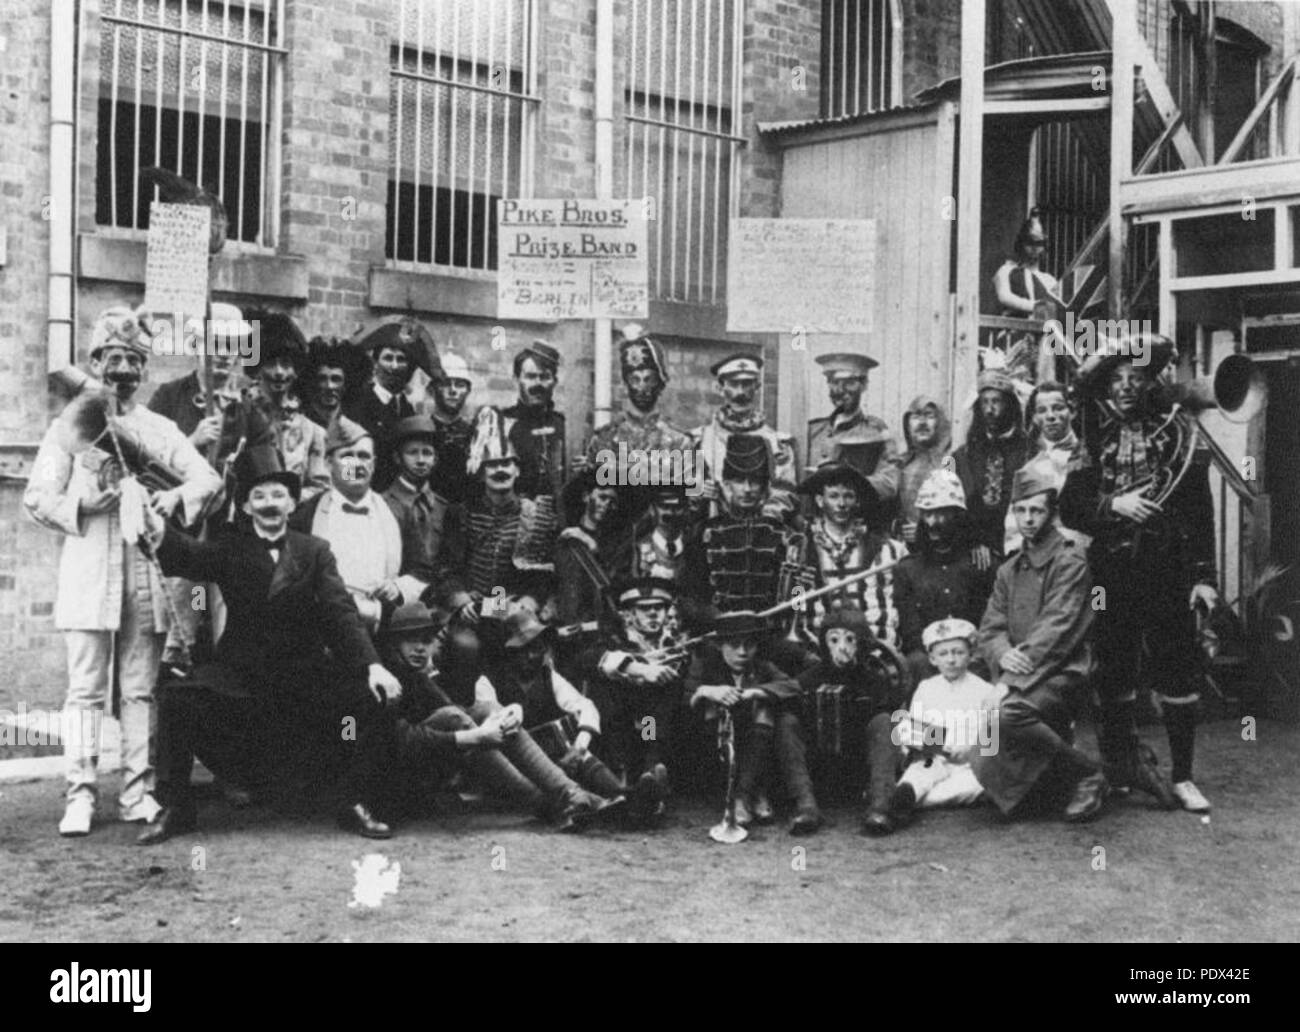 252 StateLibQld 1 212600 Pike Brothers Band, Brisbane, 1916 Stock Photo